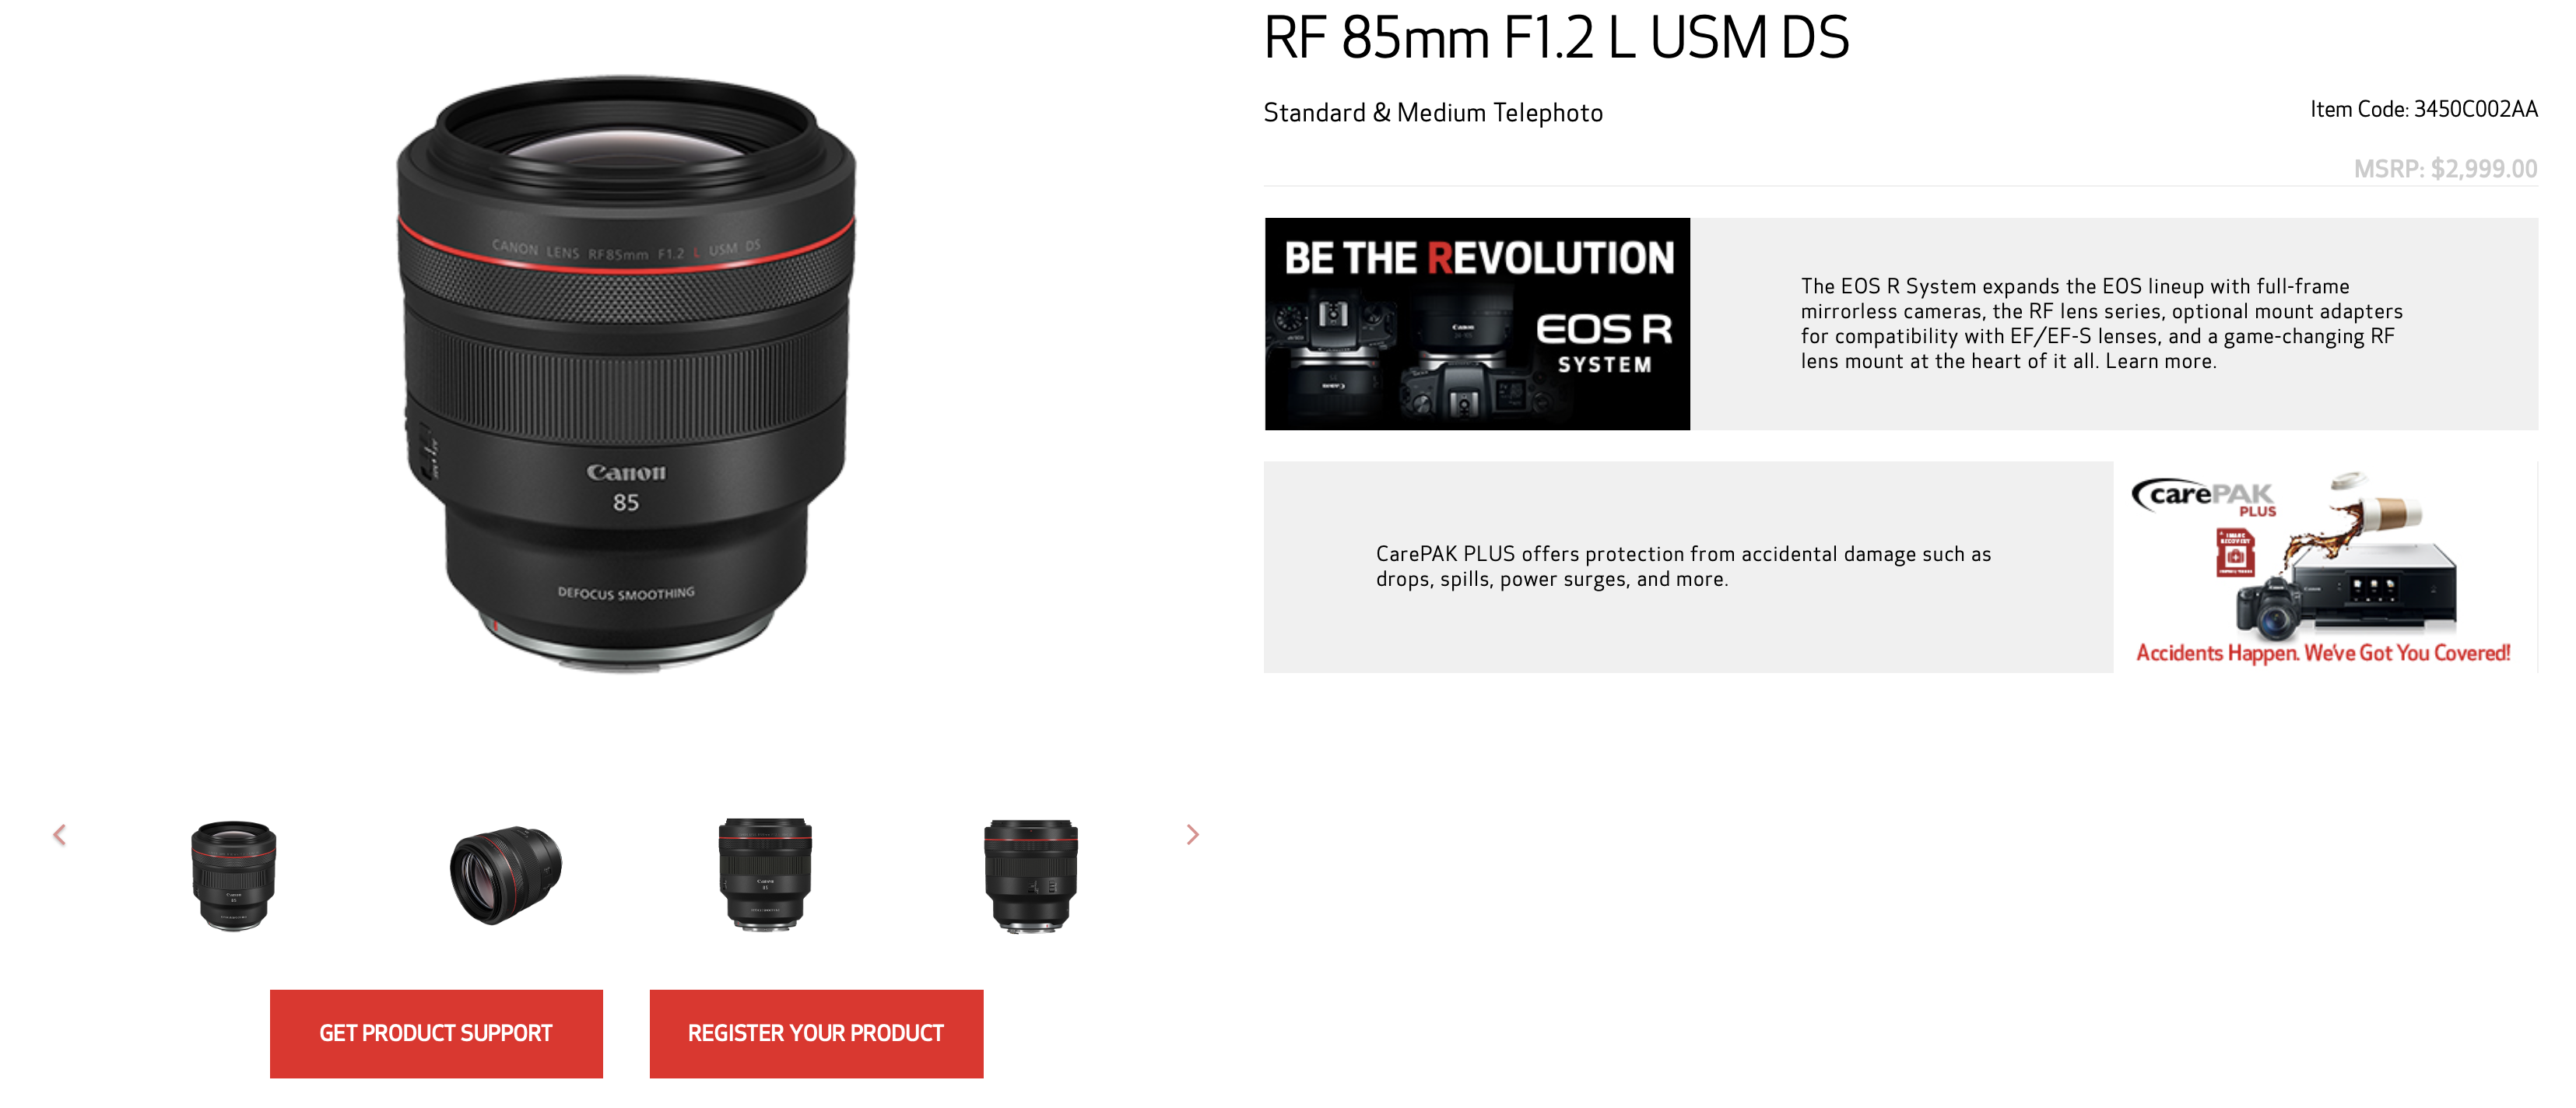 Canon giới thiệu máy ảnh DSLR EOS 1D X Mark III sở hữu nhiều siêu công nghệ và mạnh mẽ